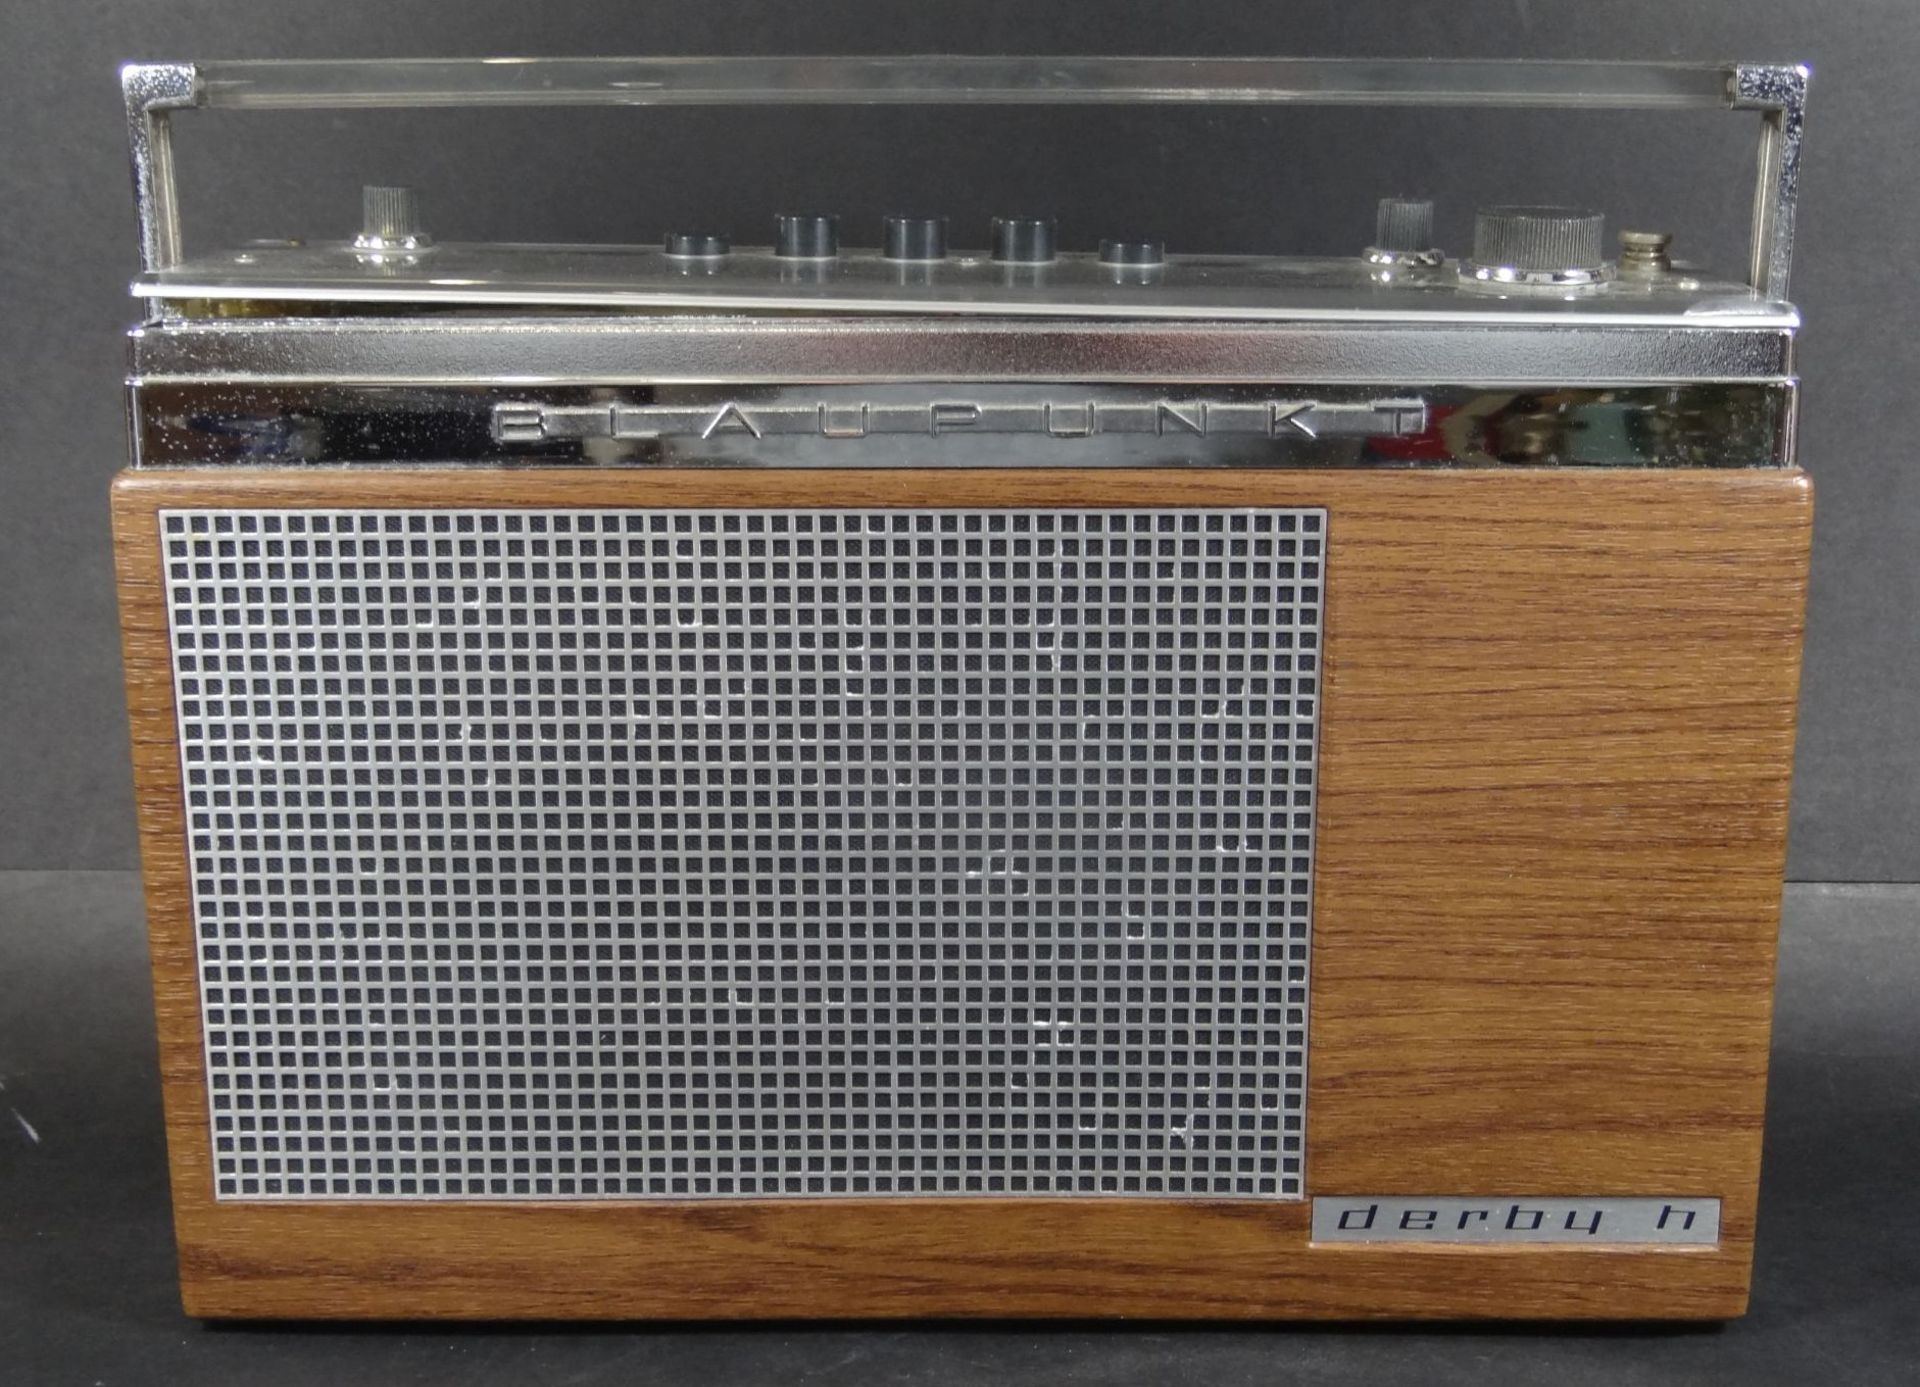 Blaupunkt Transistorradio Derby h, optisch gut erhalten, Funktion nicht geprüft, H-20 cm, B-28 c